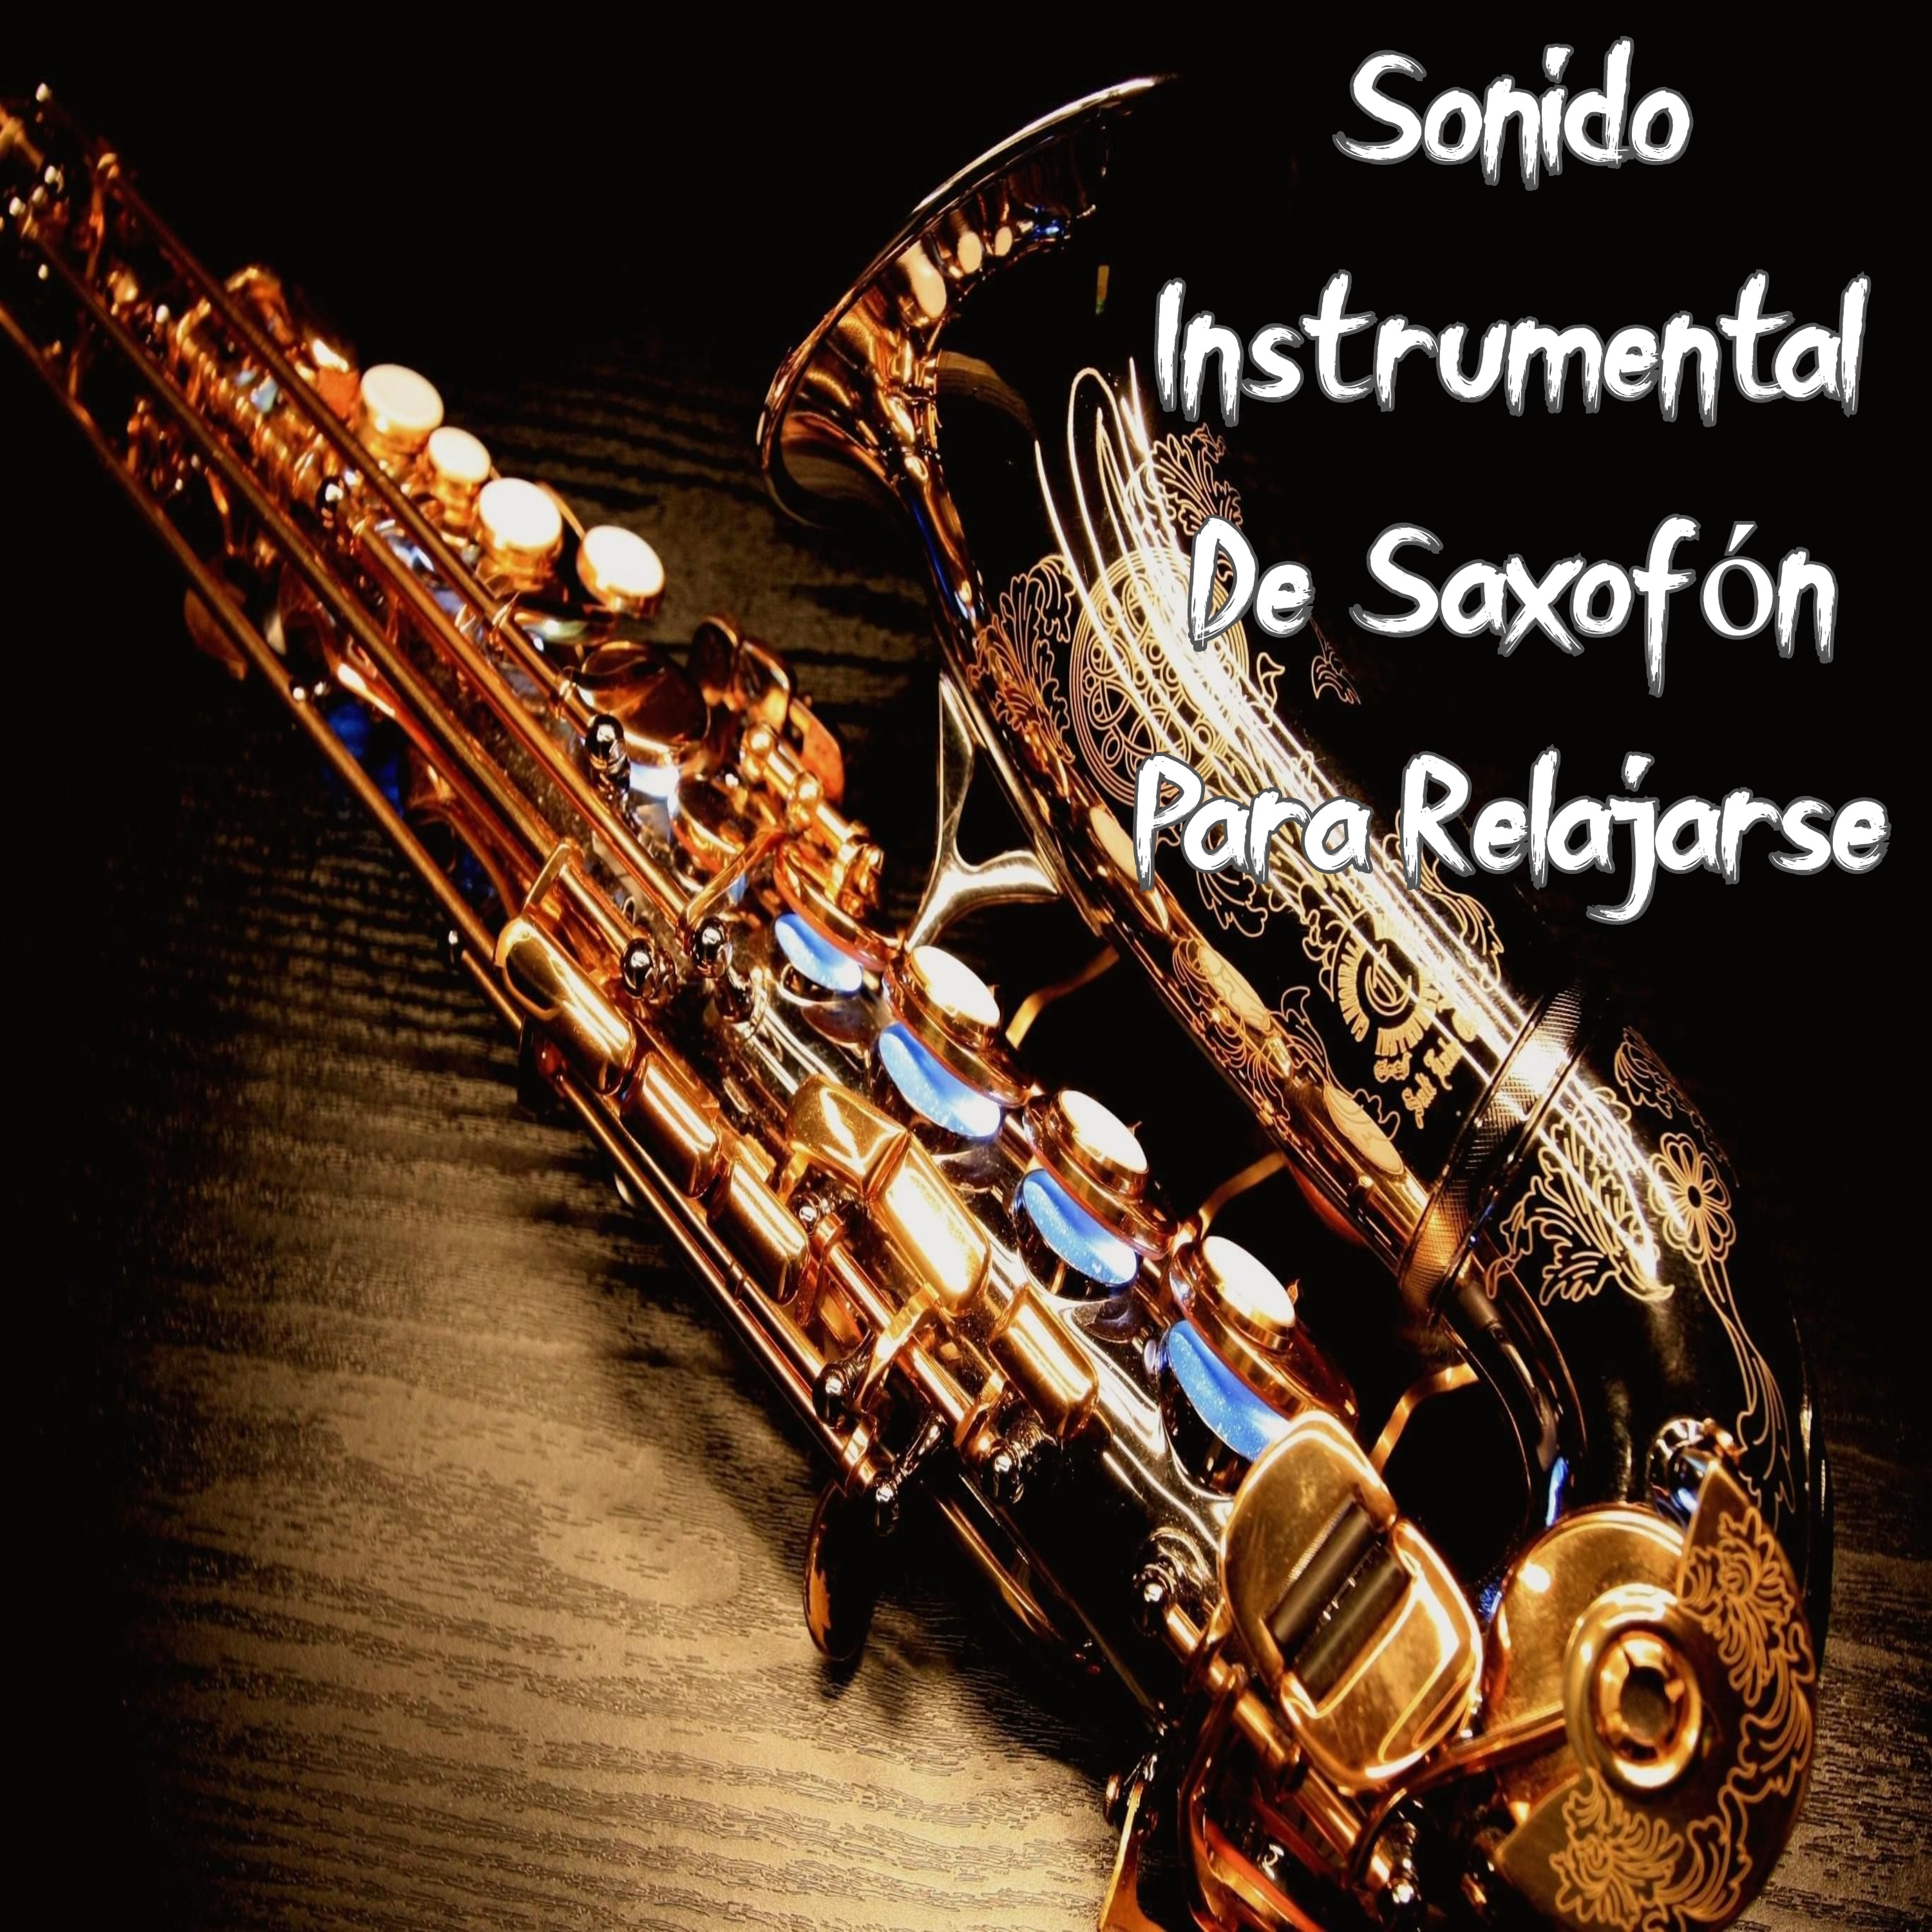 Musica instrumental cristiana con saxofon